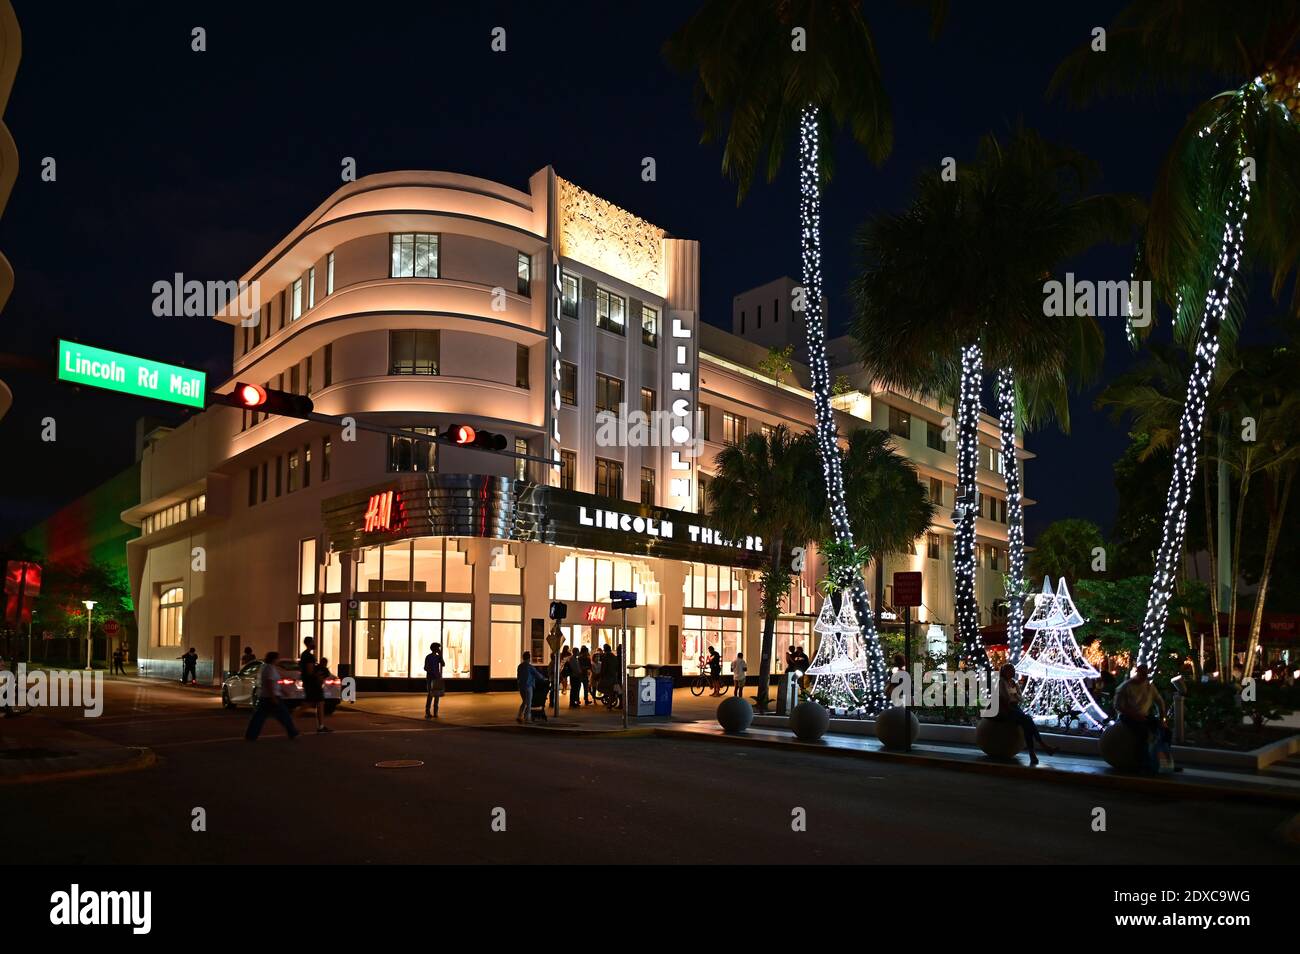 Miami Beach, Florida - December 19, 2020 - Lincoln Theatre on Lincoln Road Mall in Miami Beach, Florida at night. Stock Photo